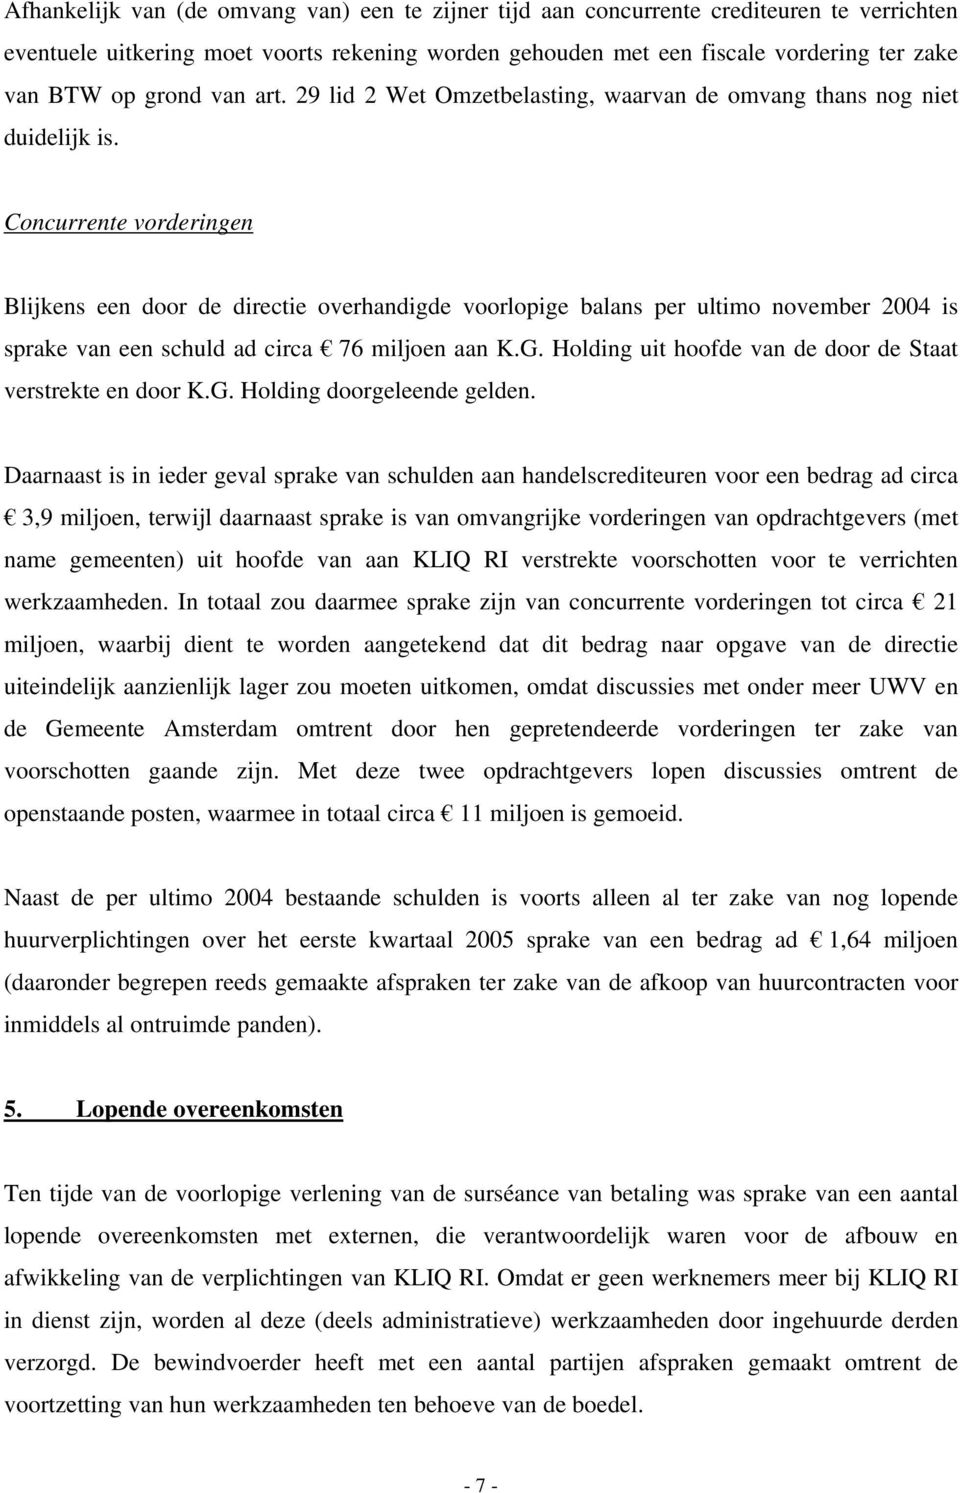 Concurrente vorderingen Blijkens een door de directie overhandigde voorlopige balans per ultimo november 2004 is sprake van een schuld ad circa 76 miljoen aan K.G.